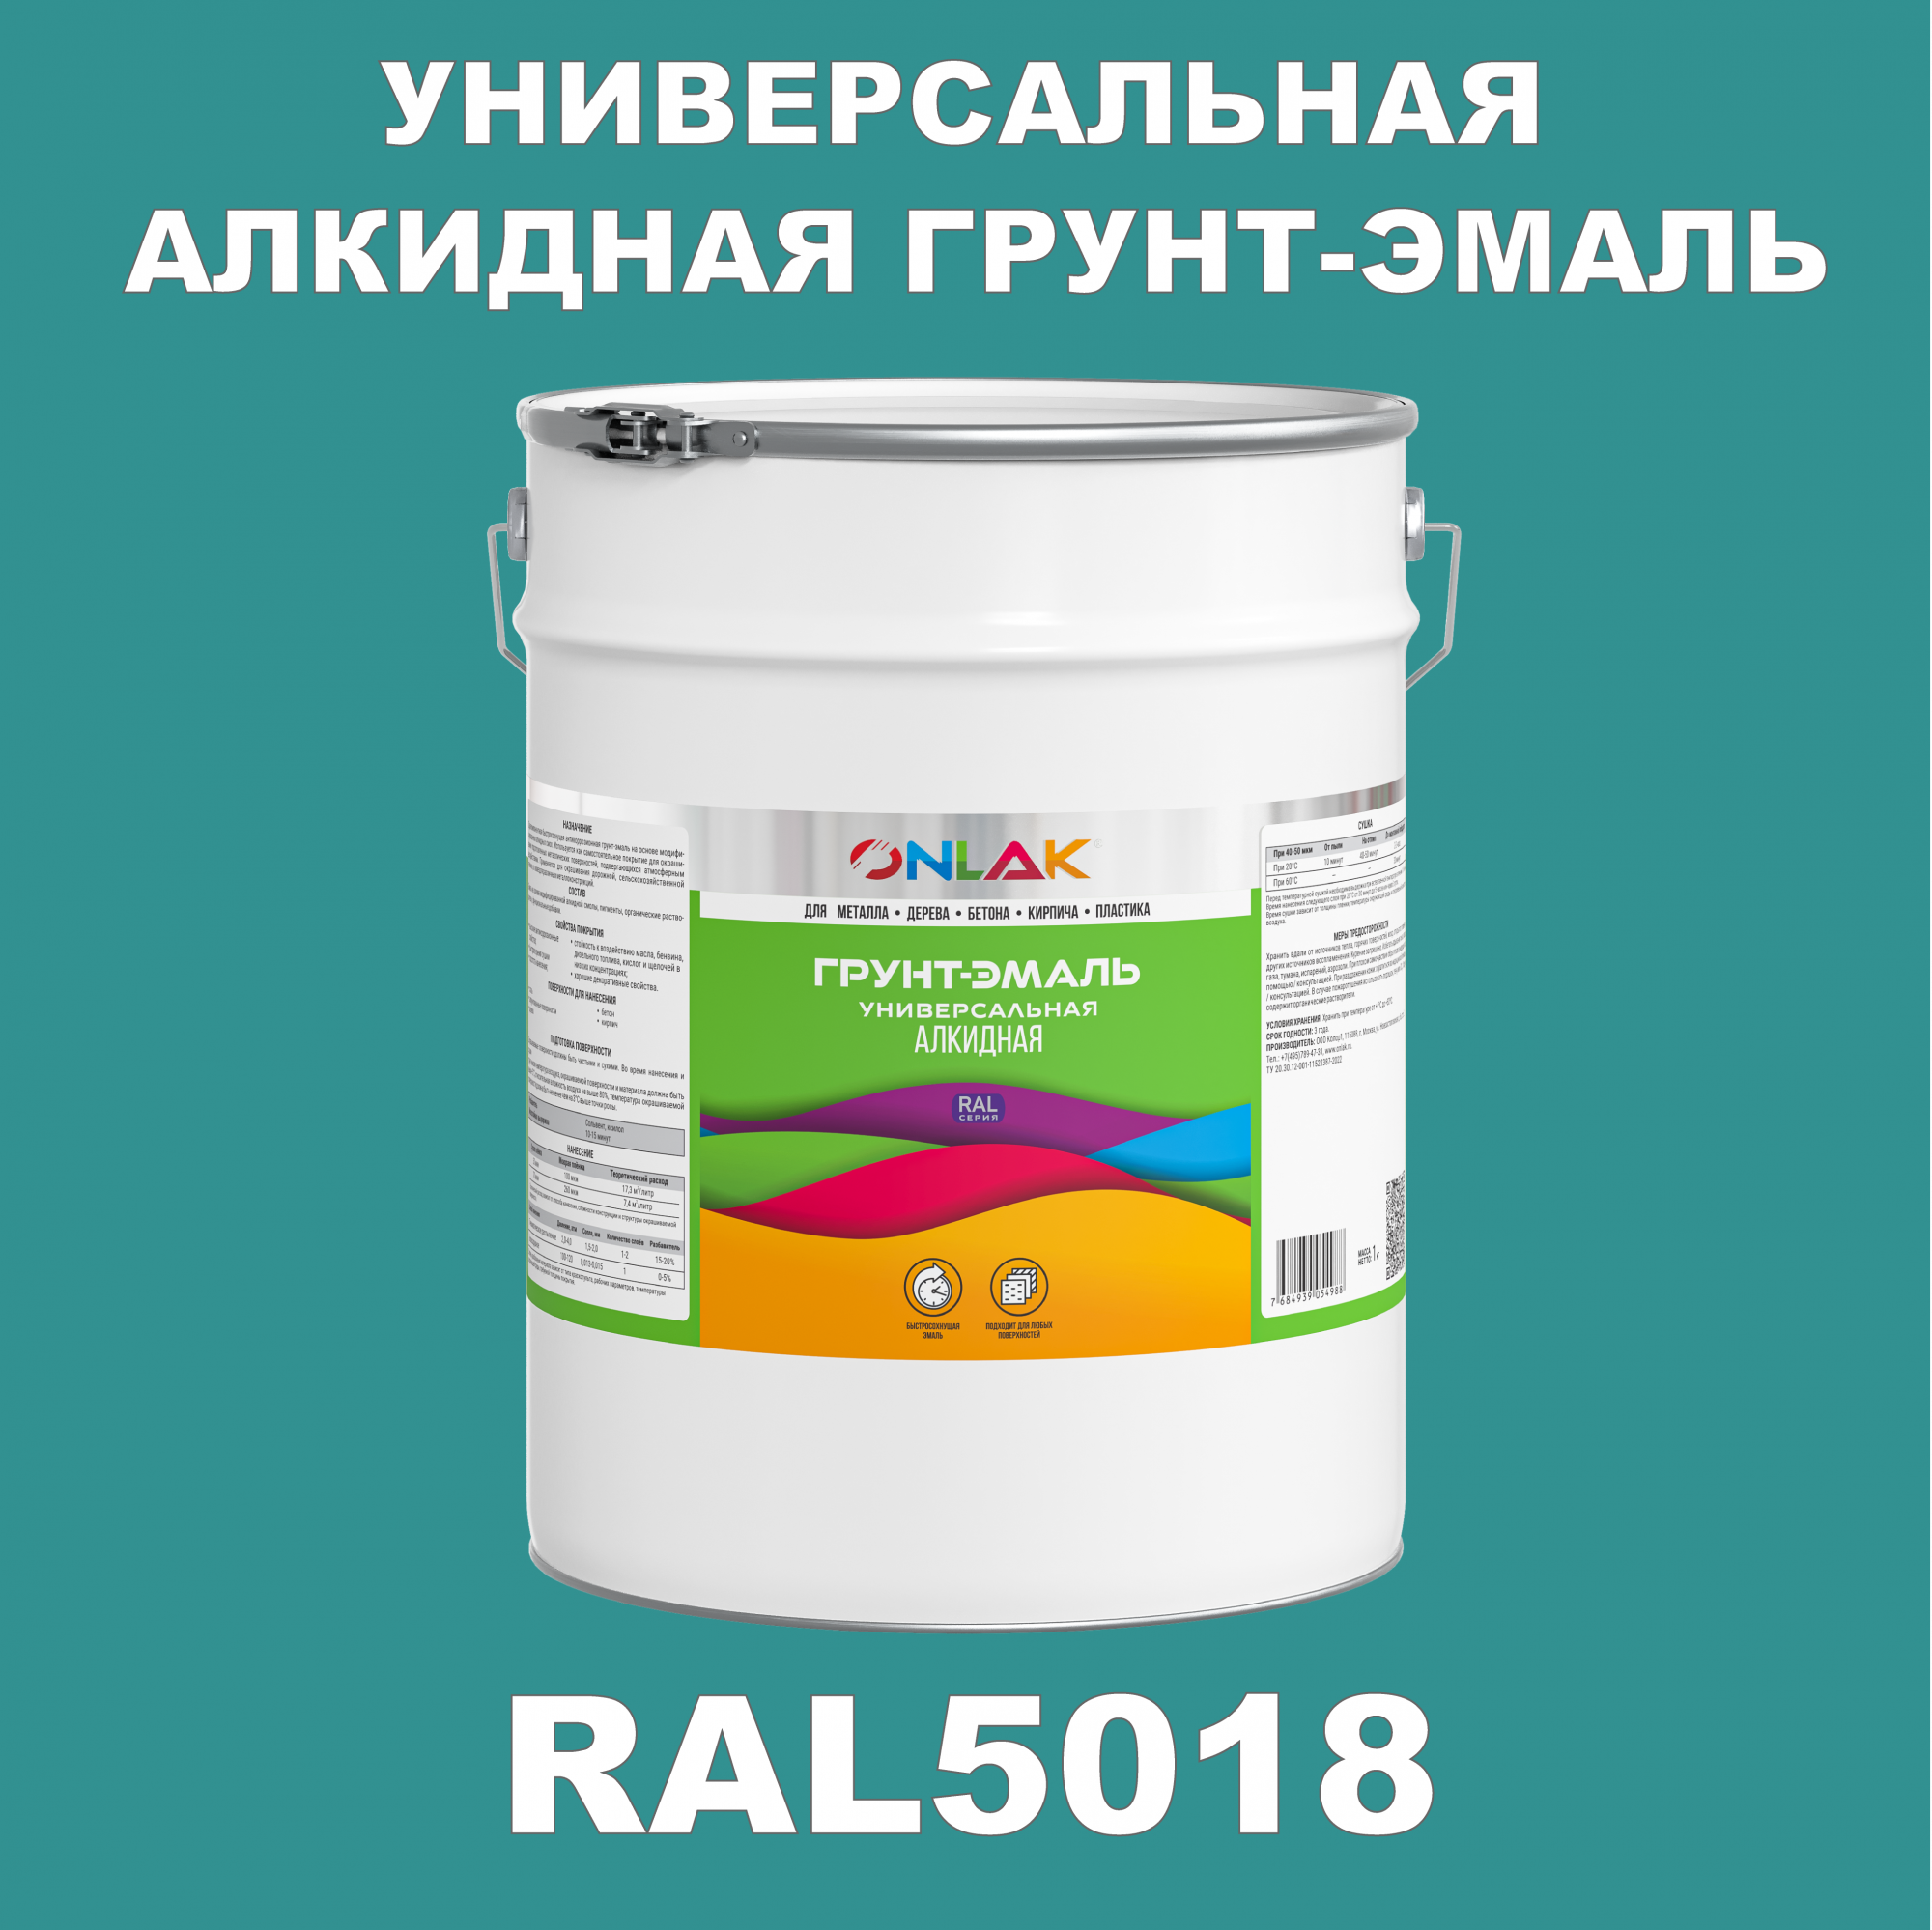 Грунт-эмаль ONLAK 1К RAL5018 антикоррозионная алкидная по металлу по ржавчине 20 кг грунт эмаль аэрозольная престиж 3в1 алкидная коричневая ral 8017 425 мл 0 425 кг